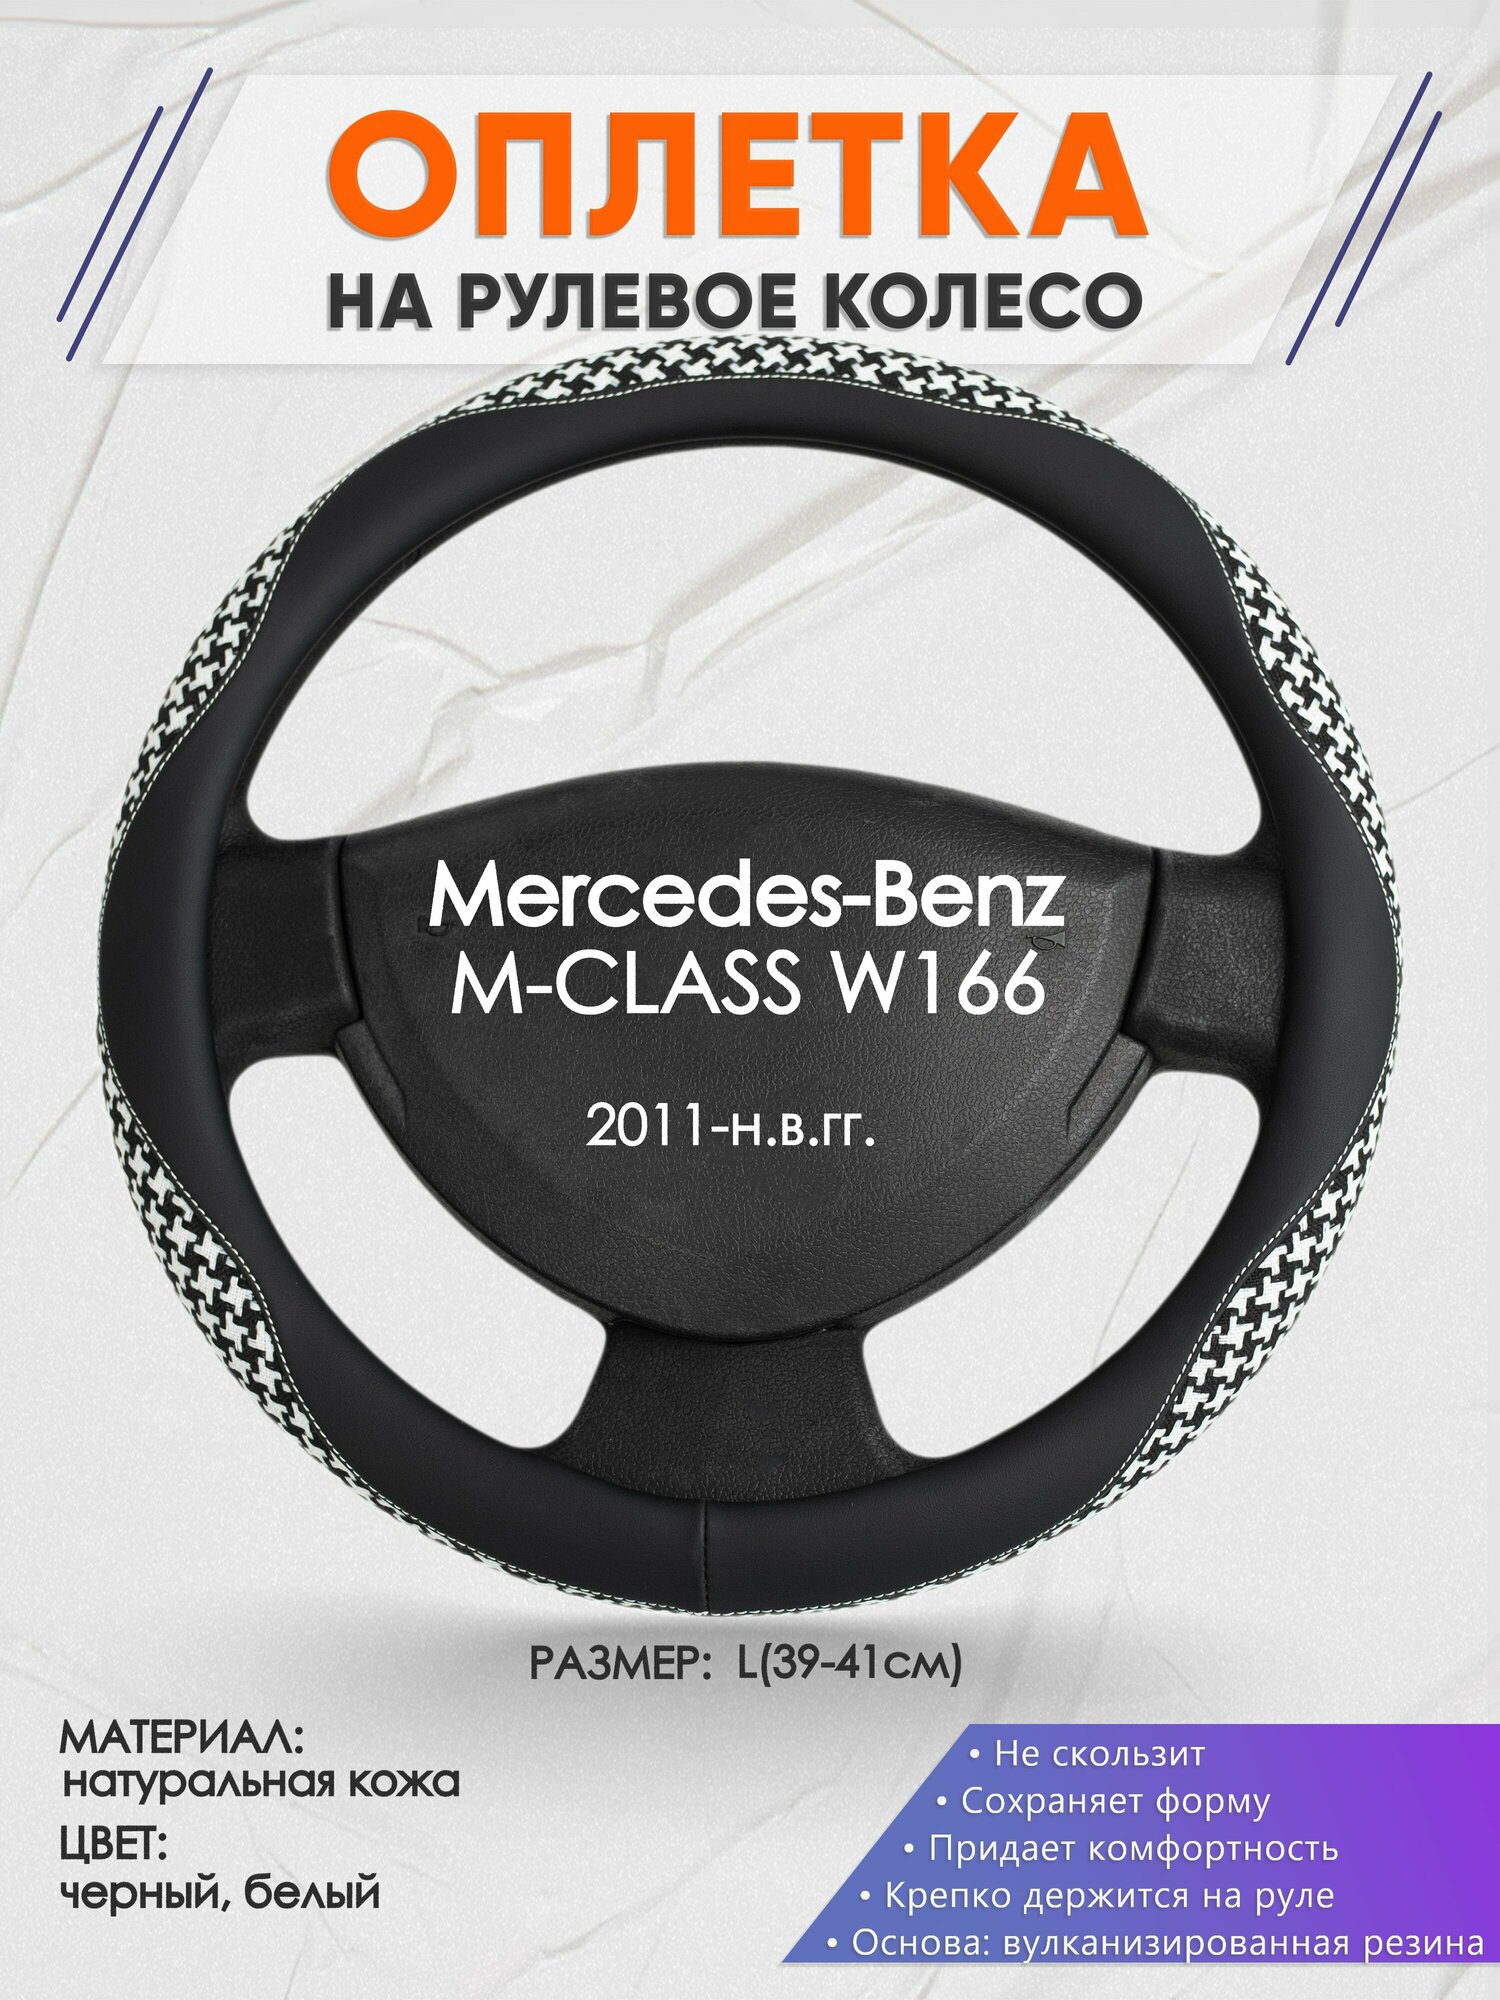 Оплетка на руль для Mercedes-Benz M-CLASS W166(Мерседес Бенц М Класс) 2011-н. в, L(39-41см), Натуральная кожа 21